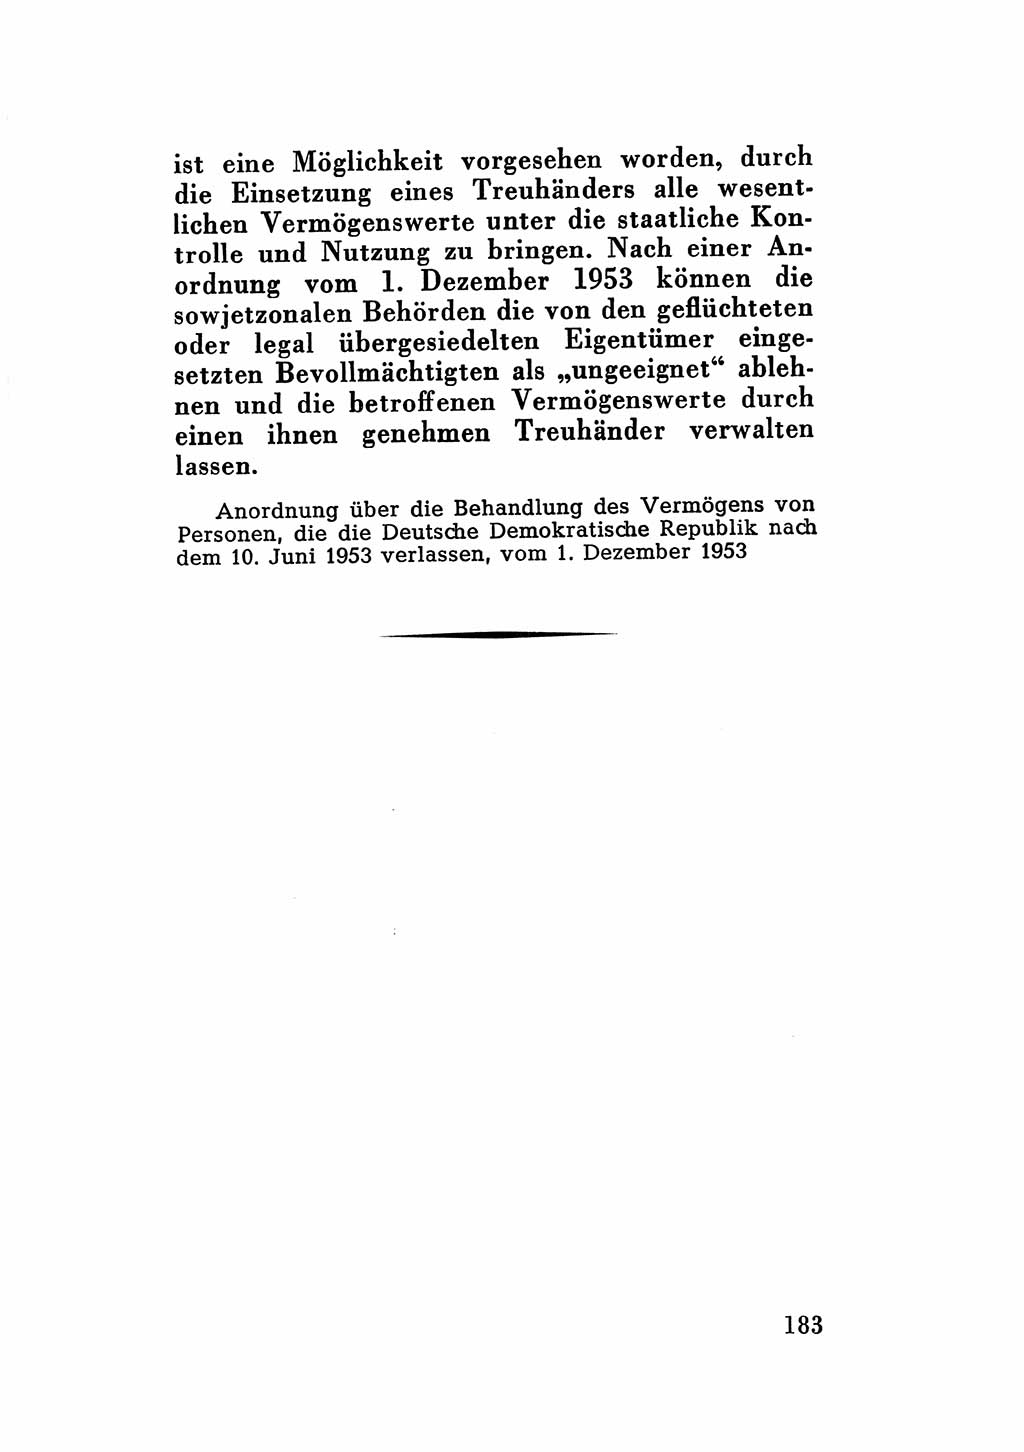 Katalog des Unrechts, Untersuchungsausschuß Freiheitlicher Juristen (UfJ) [Bundesrepublik Deutschland (BRD)] 1956, Seite 183 (Kat. UnR. UfJ BRD 1956, S. 183)